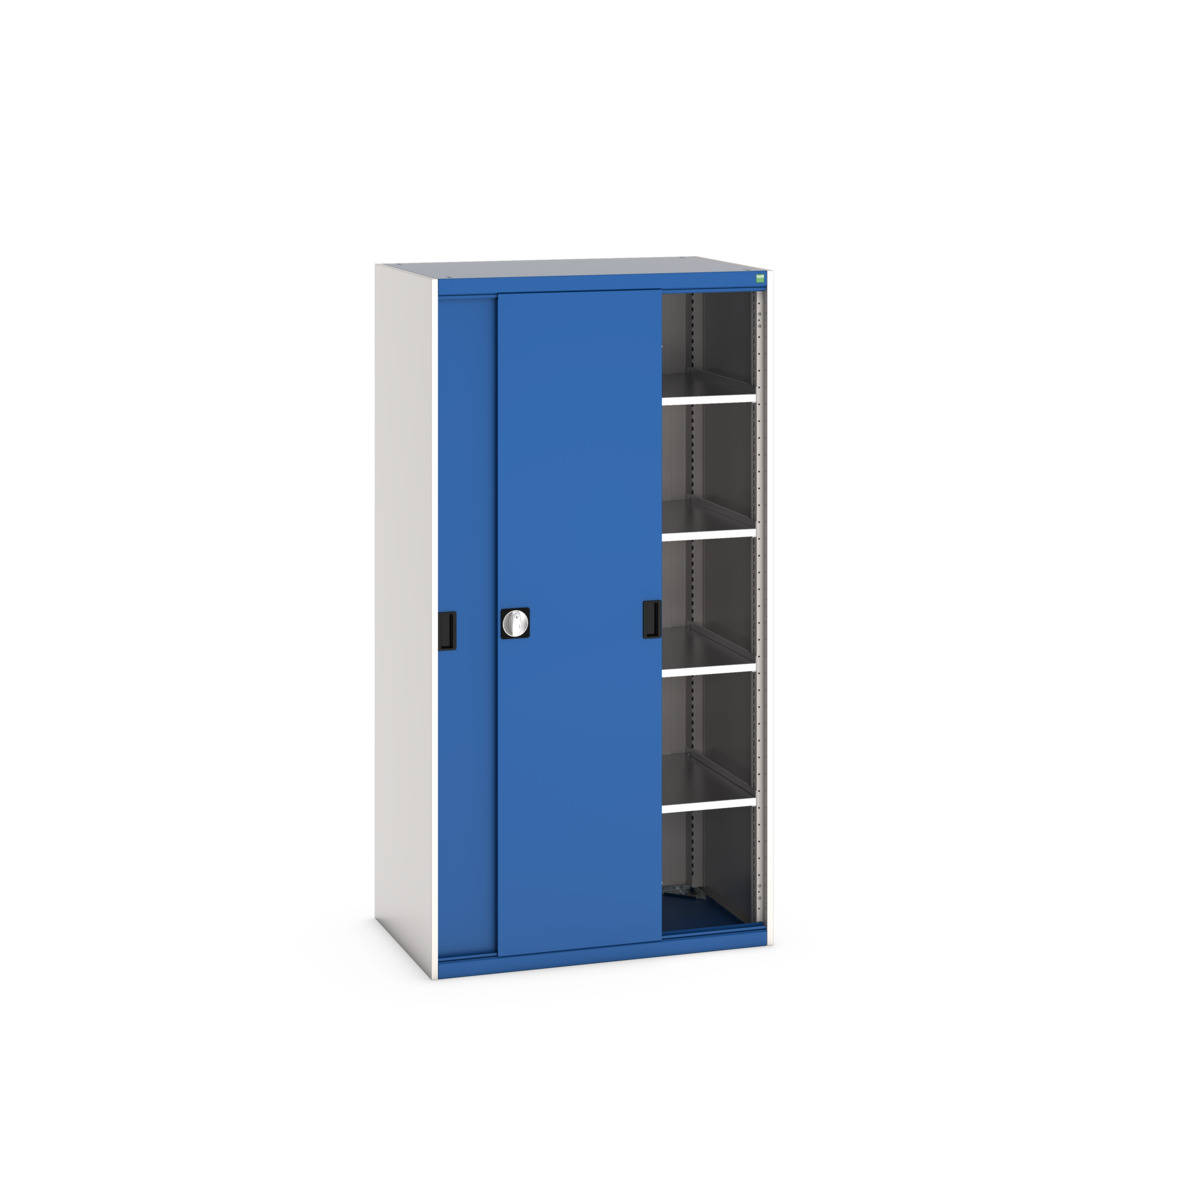 40021141.11V - cubio cupboard